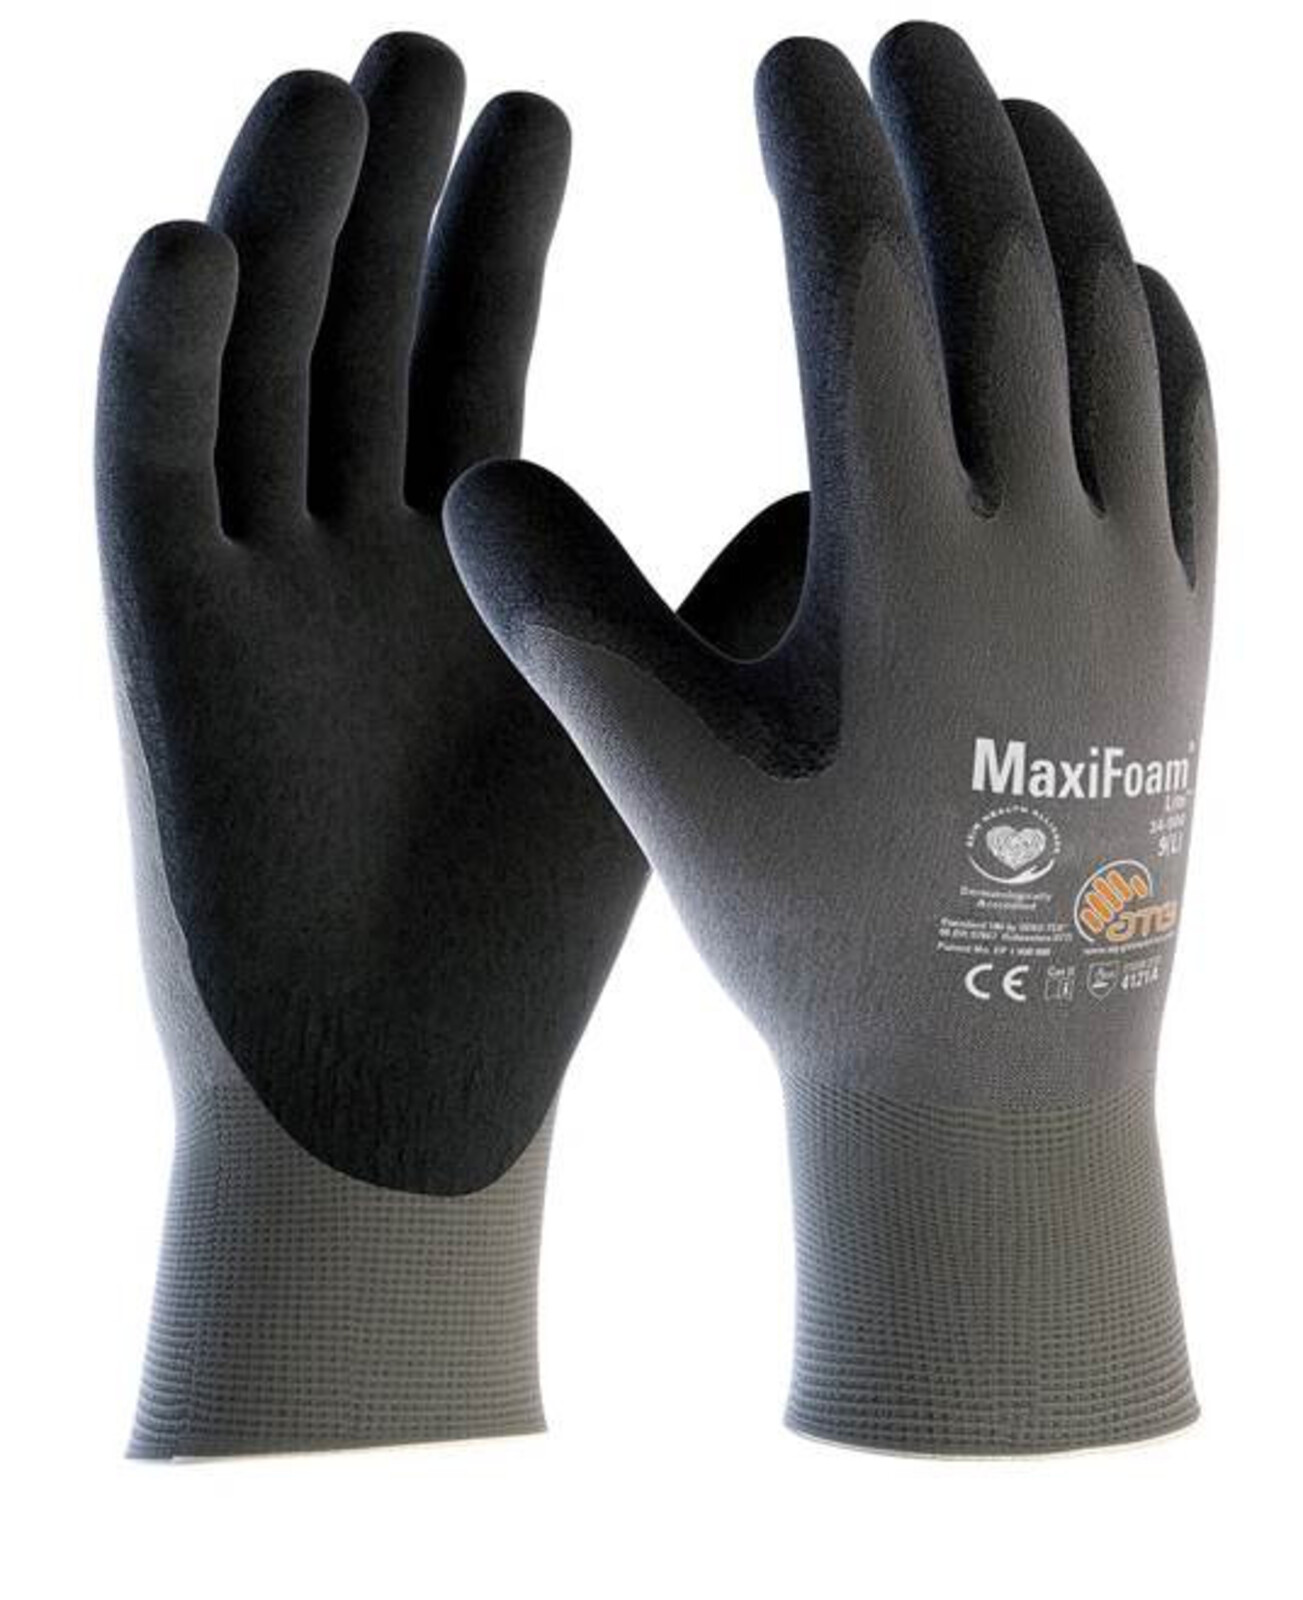 Pracovné rukavice ATG MaxiFoam LITE 34-900 (12 párov) - veľkosť: 7/S, farba: sivá